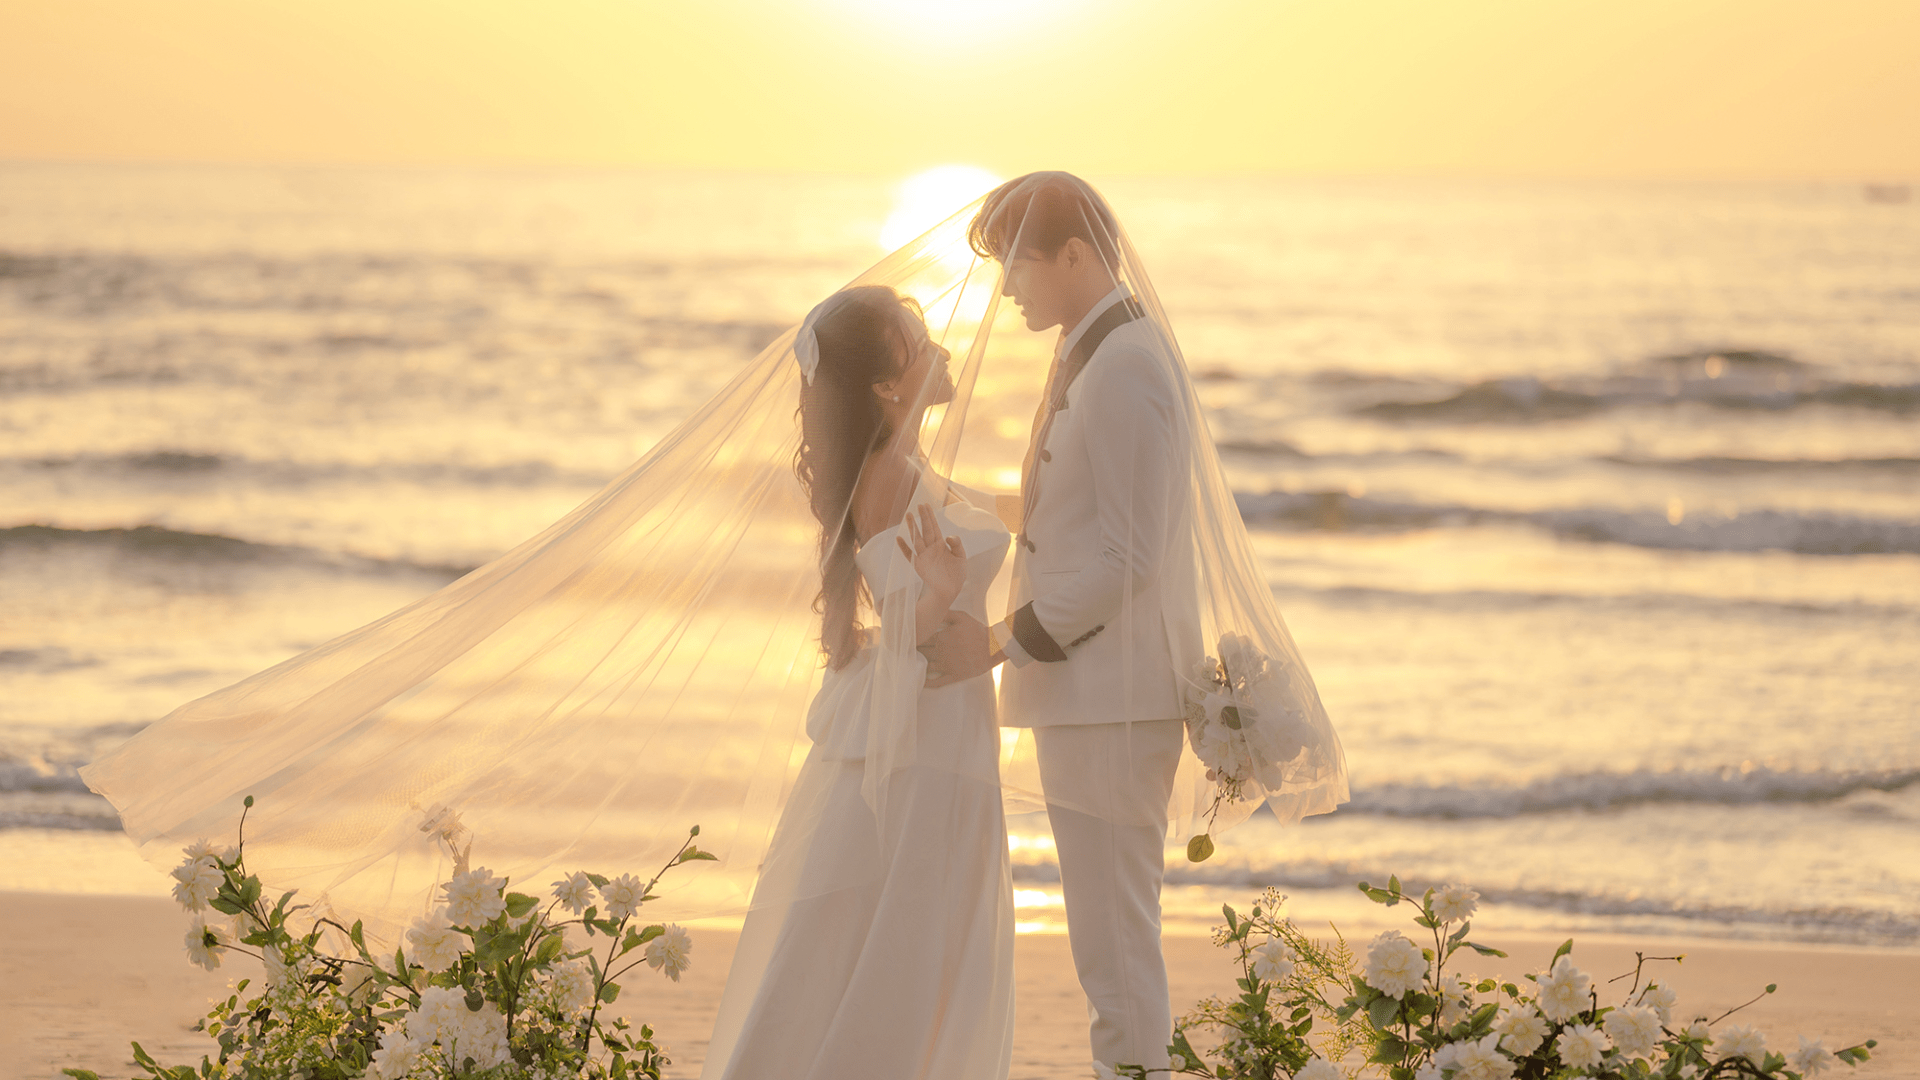 Lai Hoa Wedding - Studio chụp ảnh cưới Đà Nẵng chất lượng